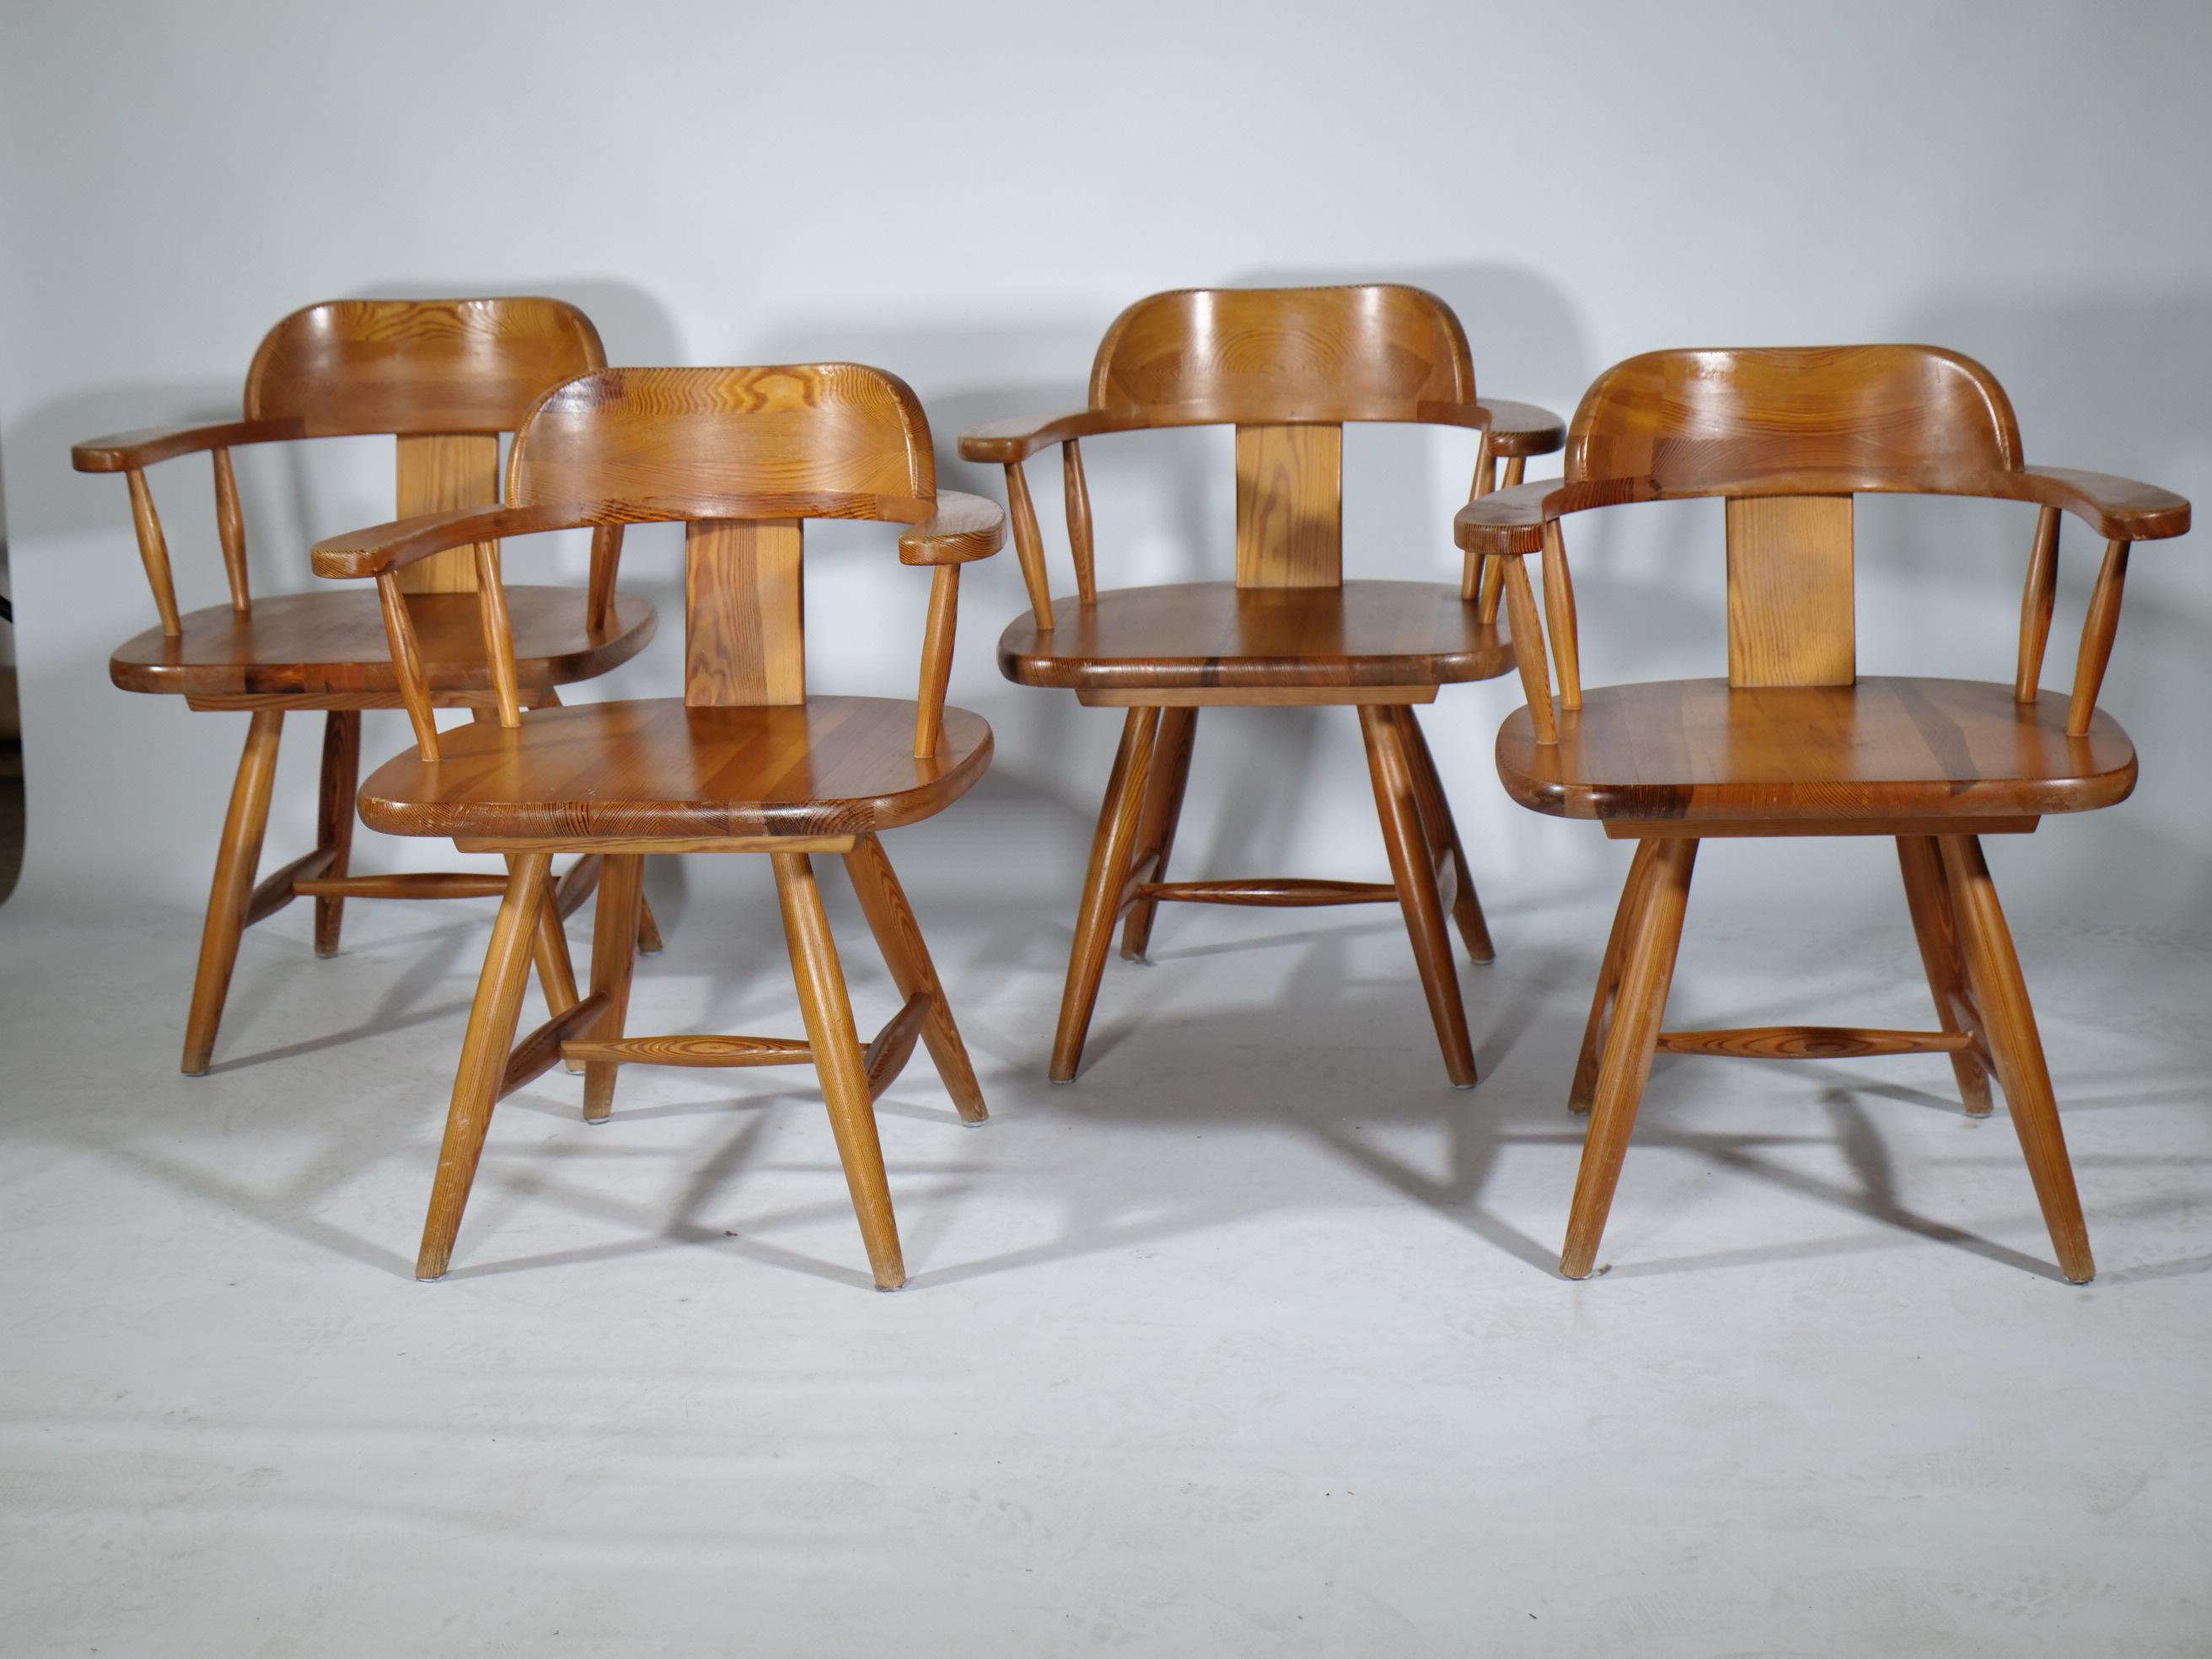 Finnische Massivholzstühle aus Kiefernholz aus dem Hause Asko. Die Armlehner sind hochwertig gefertigt und im klassischem skandinavischen Landhausstil gehalten. Die Stühle sind in gebrauchtem Zustand. 
 
Breite: 61 cm 
Höhe: 74 cm 
Tiefe: 50